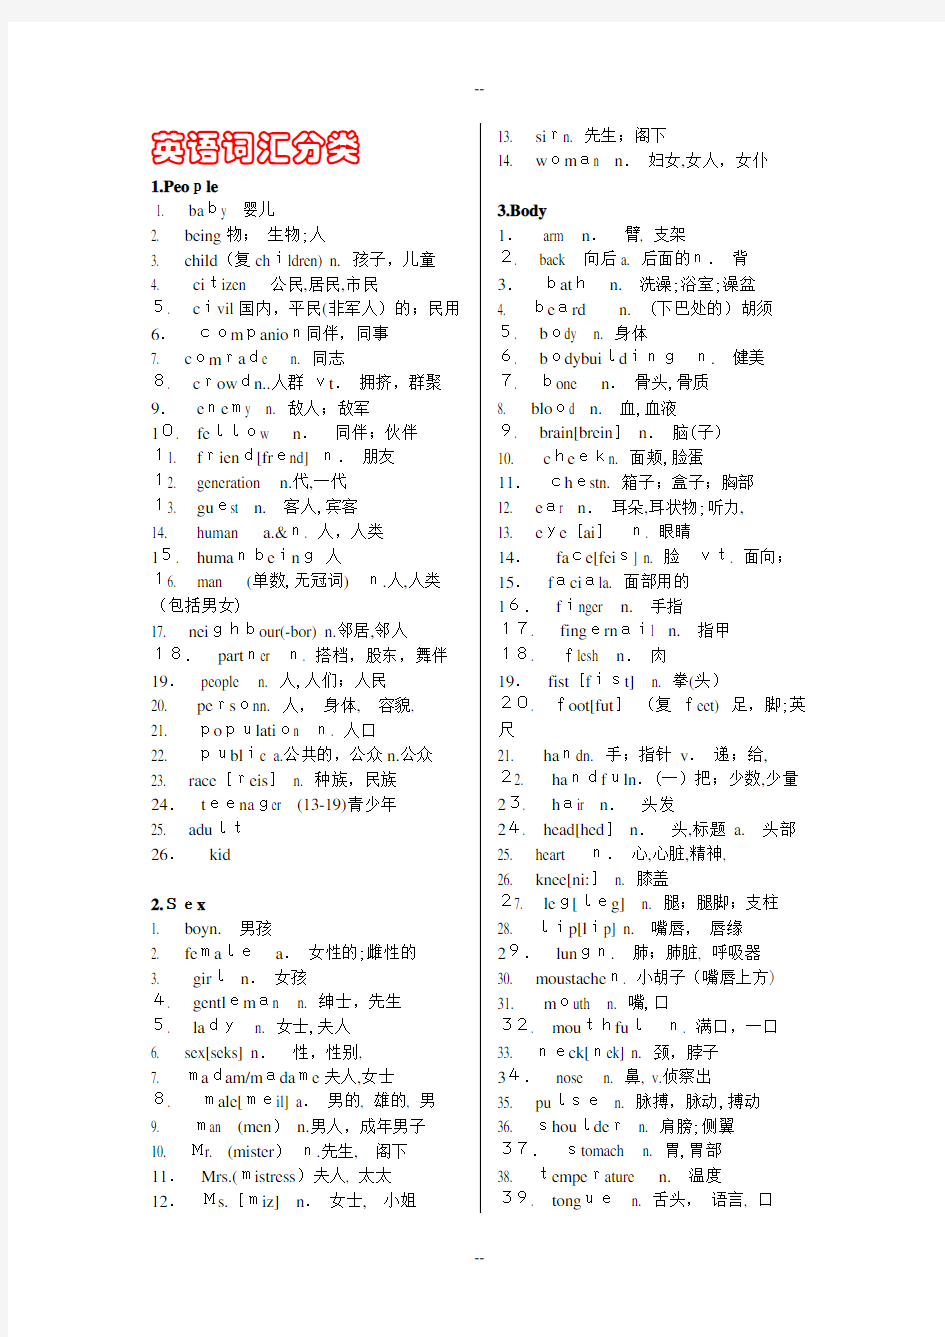 高考英语分类词汇表